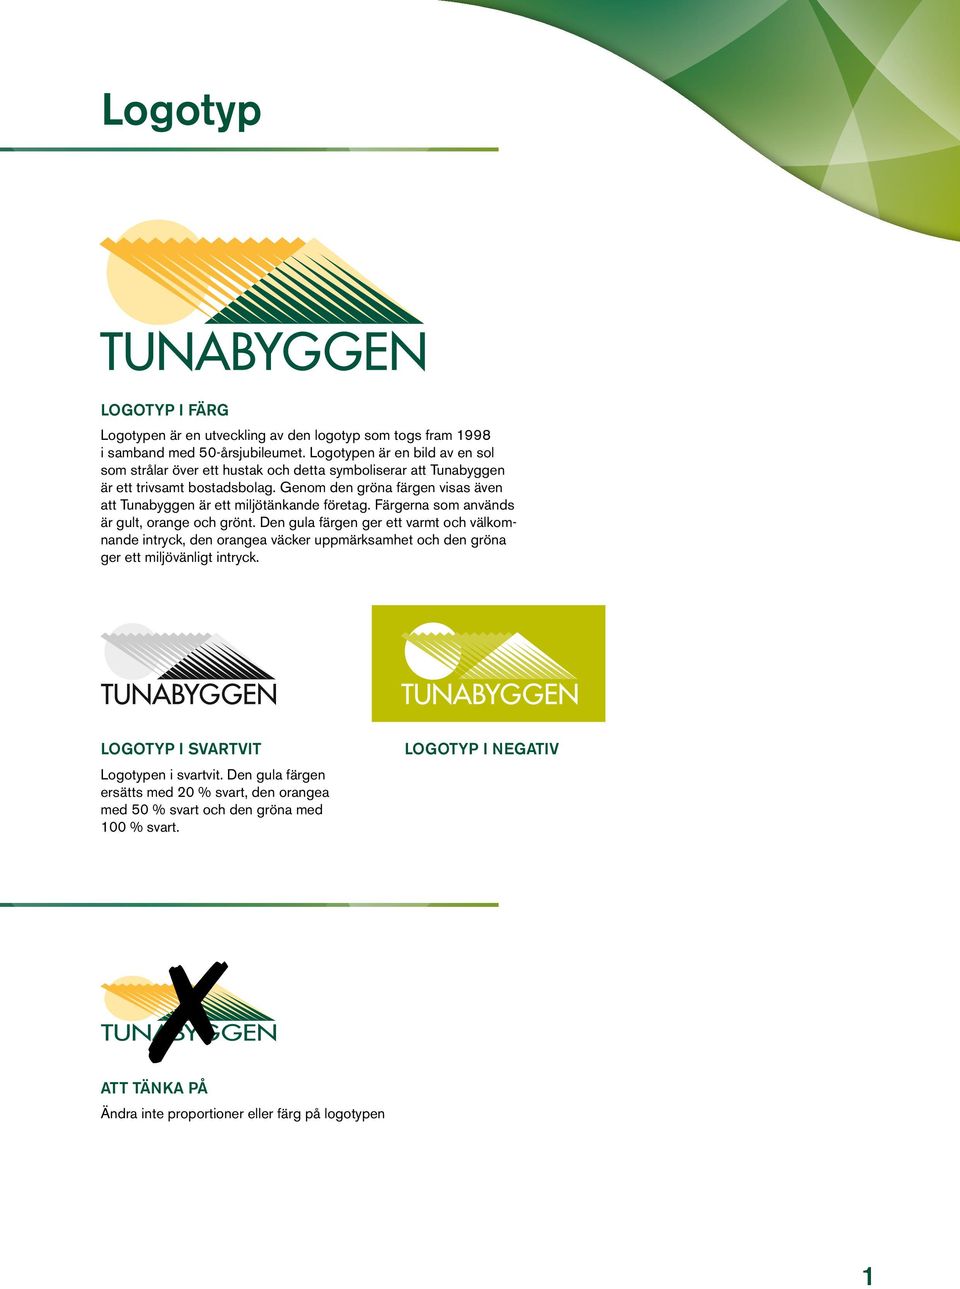 Genom den gröna färgen visas även att Tunabyggen är ett miljötänkande företag. Färgerna som används är gult, orange och grönt.